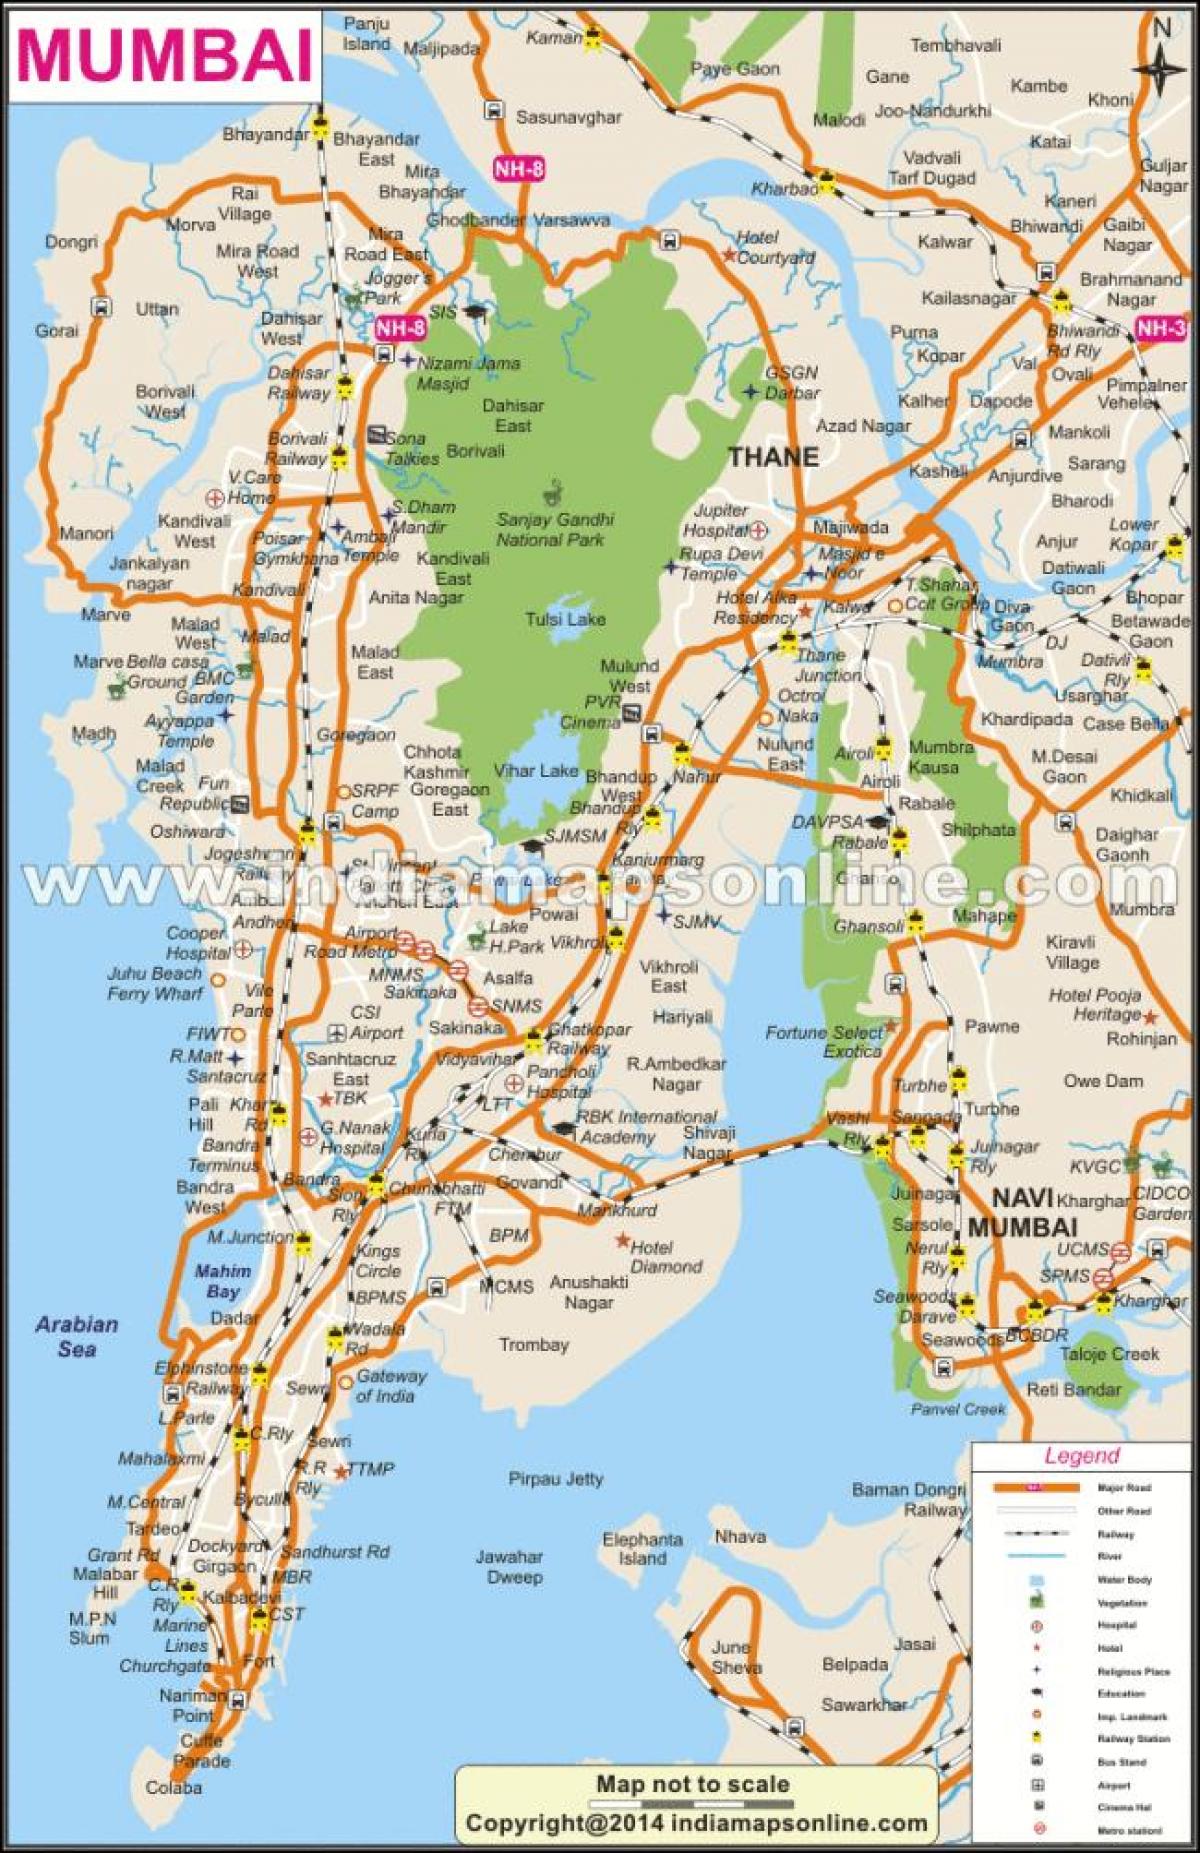 מפה מלאה של מומבאי